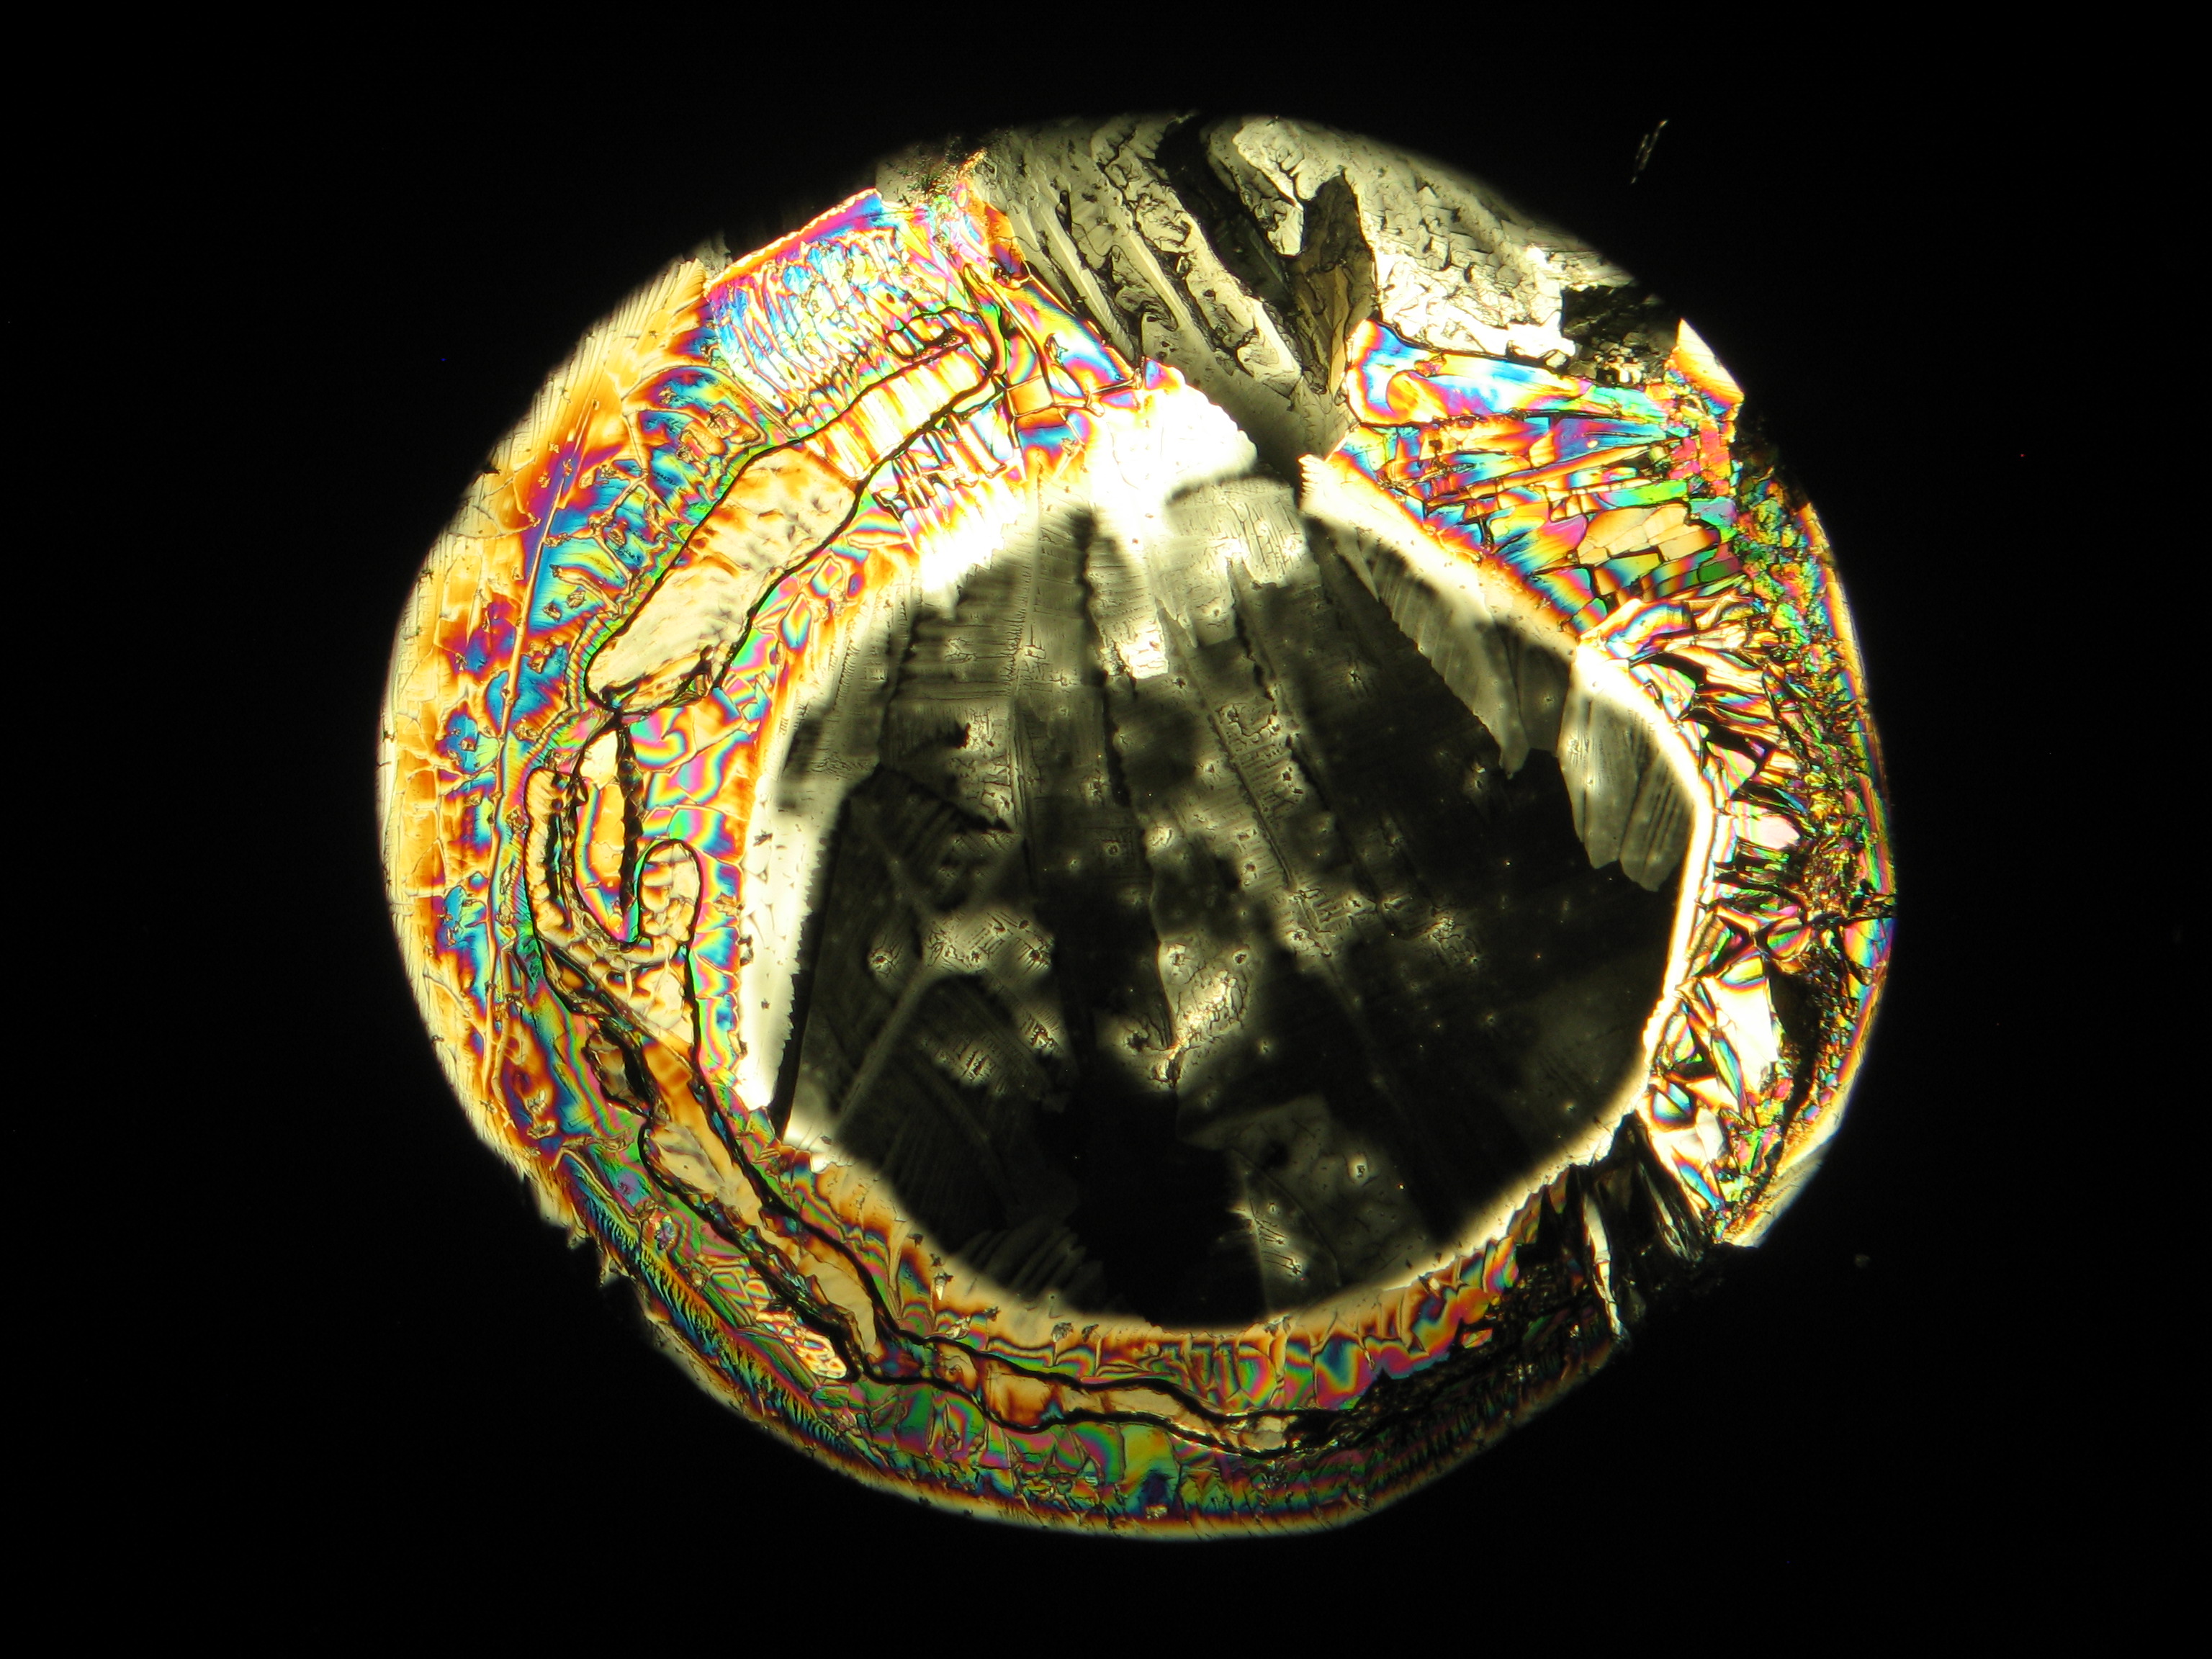 Reale Probe mit Magnesiumsulfatsalzen, kristallisiert aus wässriger Lösung auf einem Objektträger